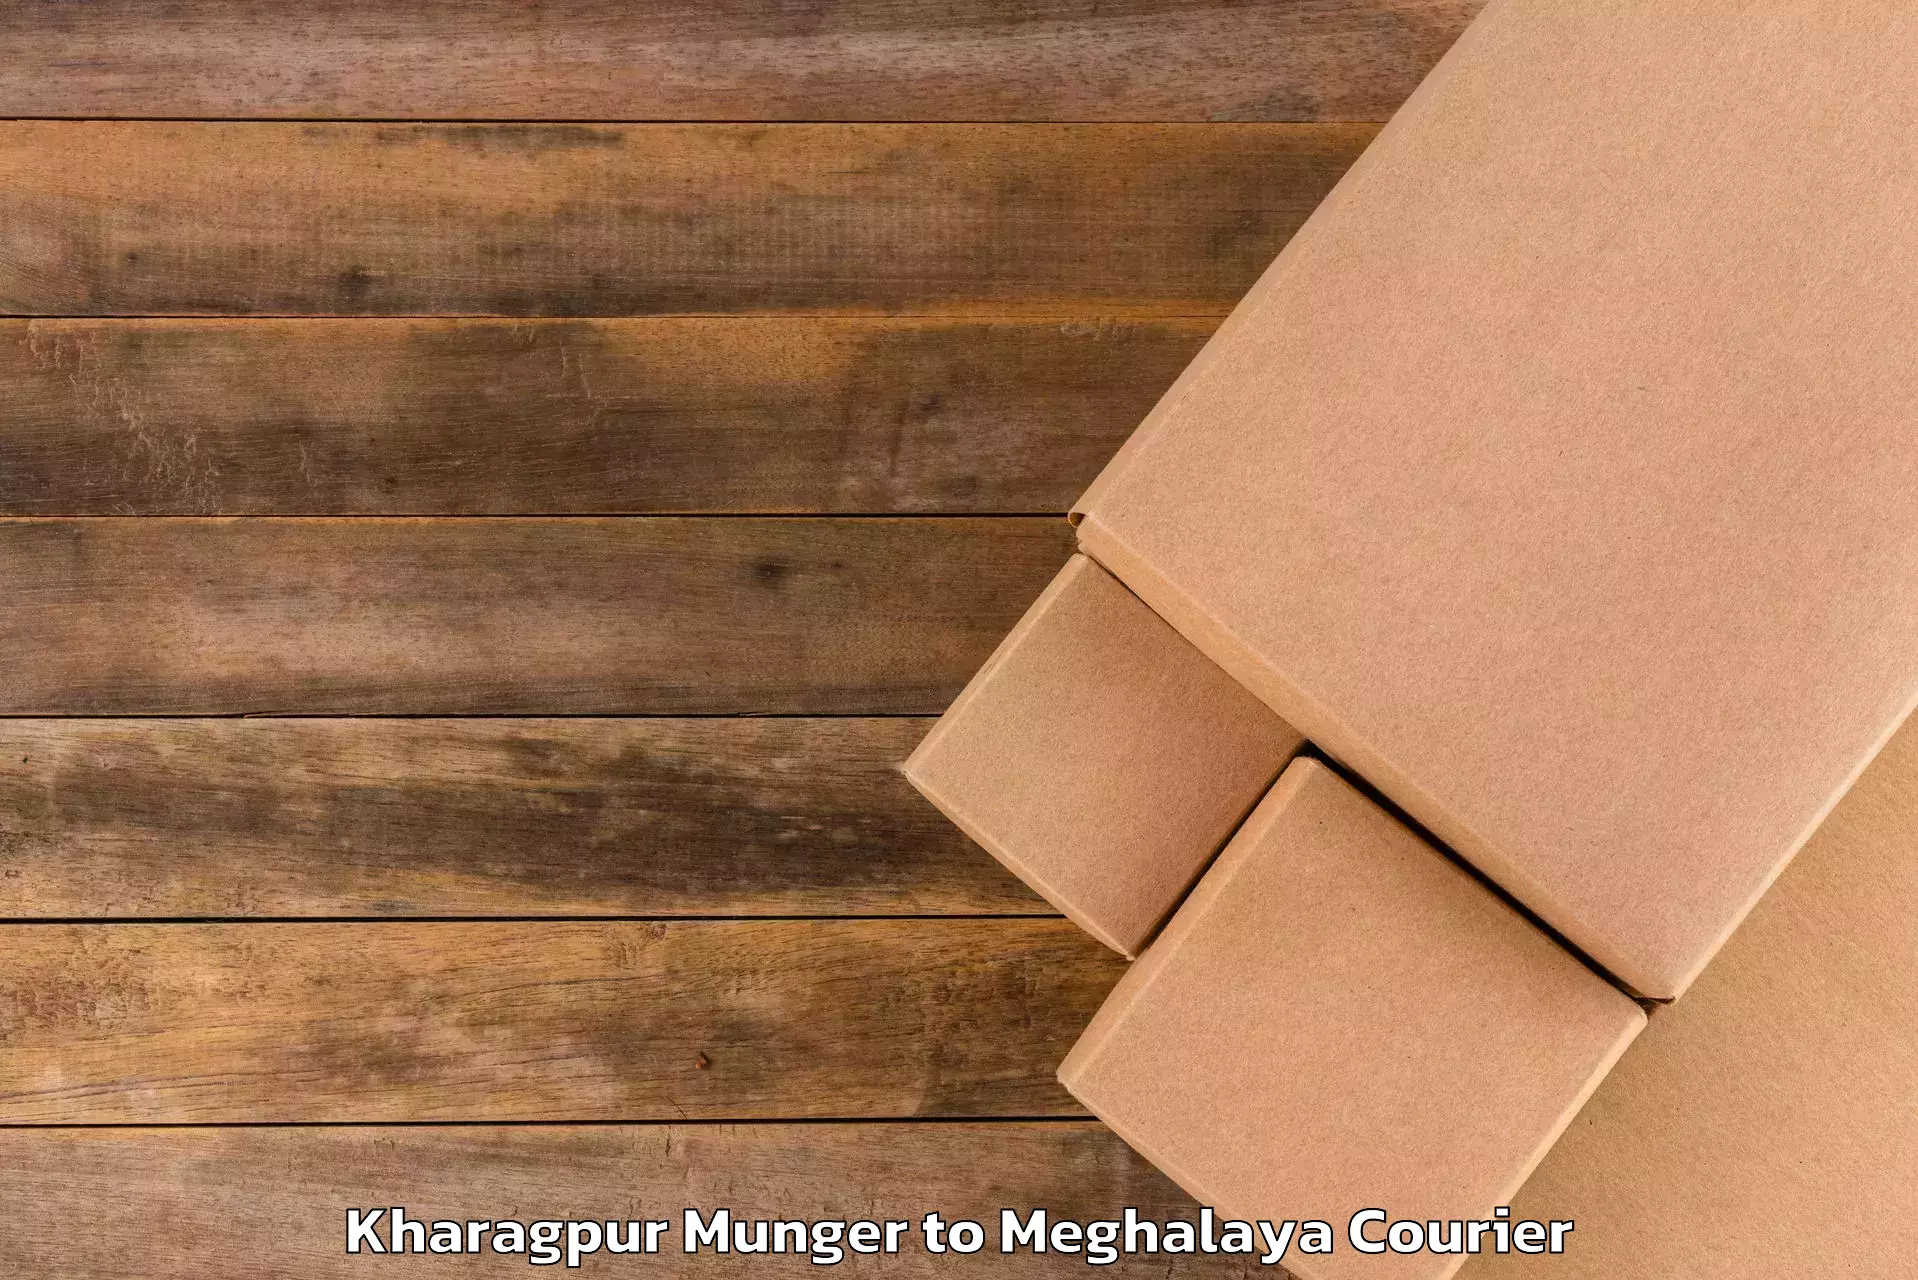 Baggage transport scheduler Kharagpur Munger to Dkhiah West